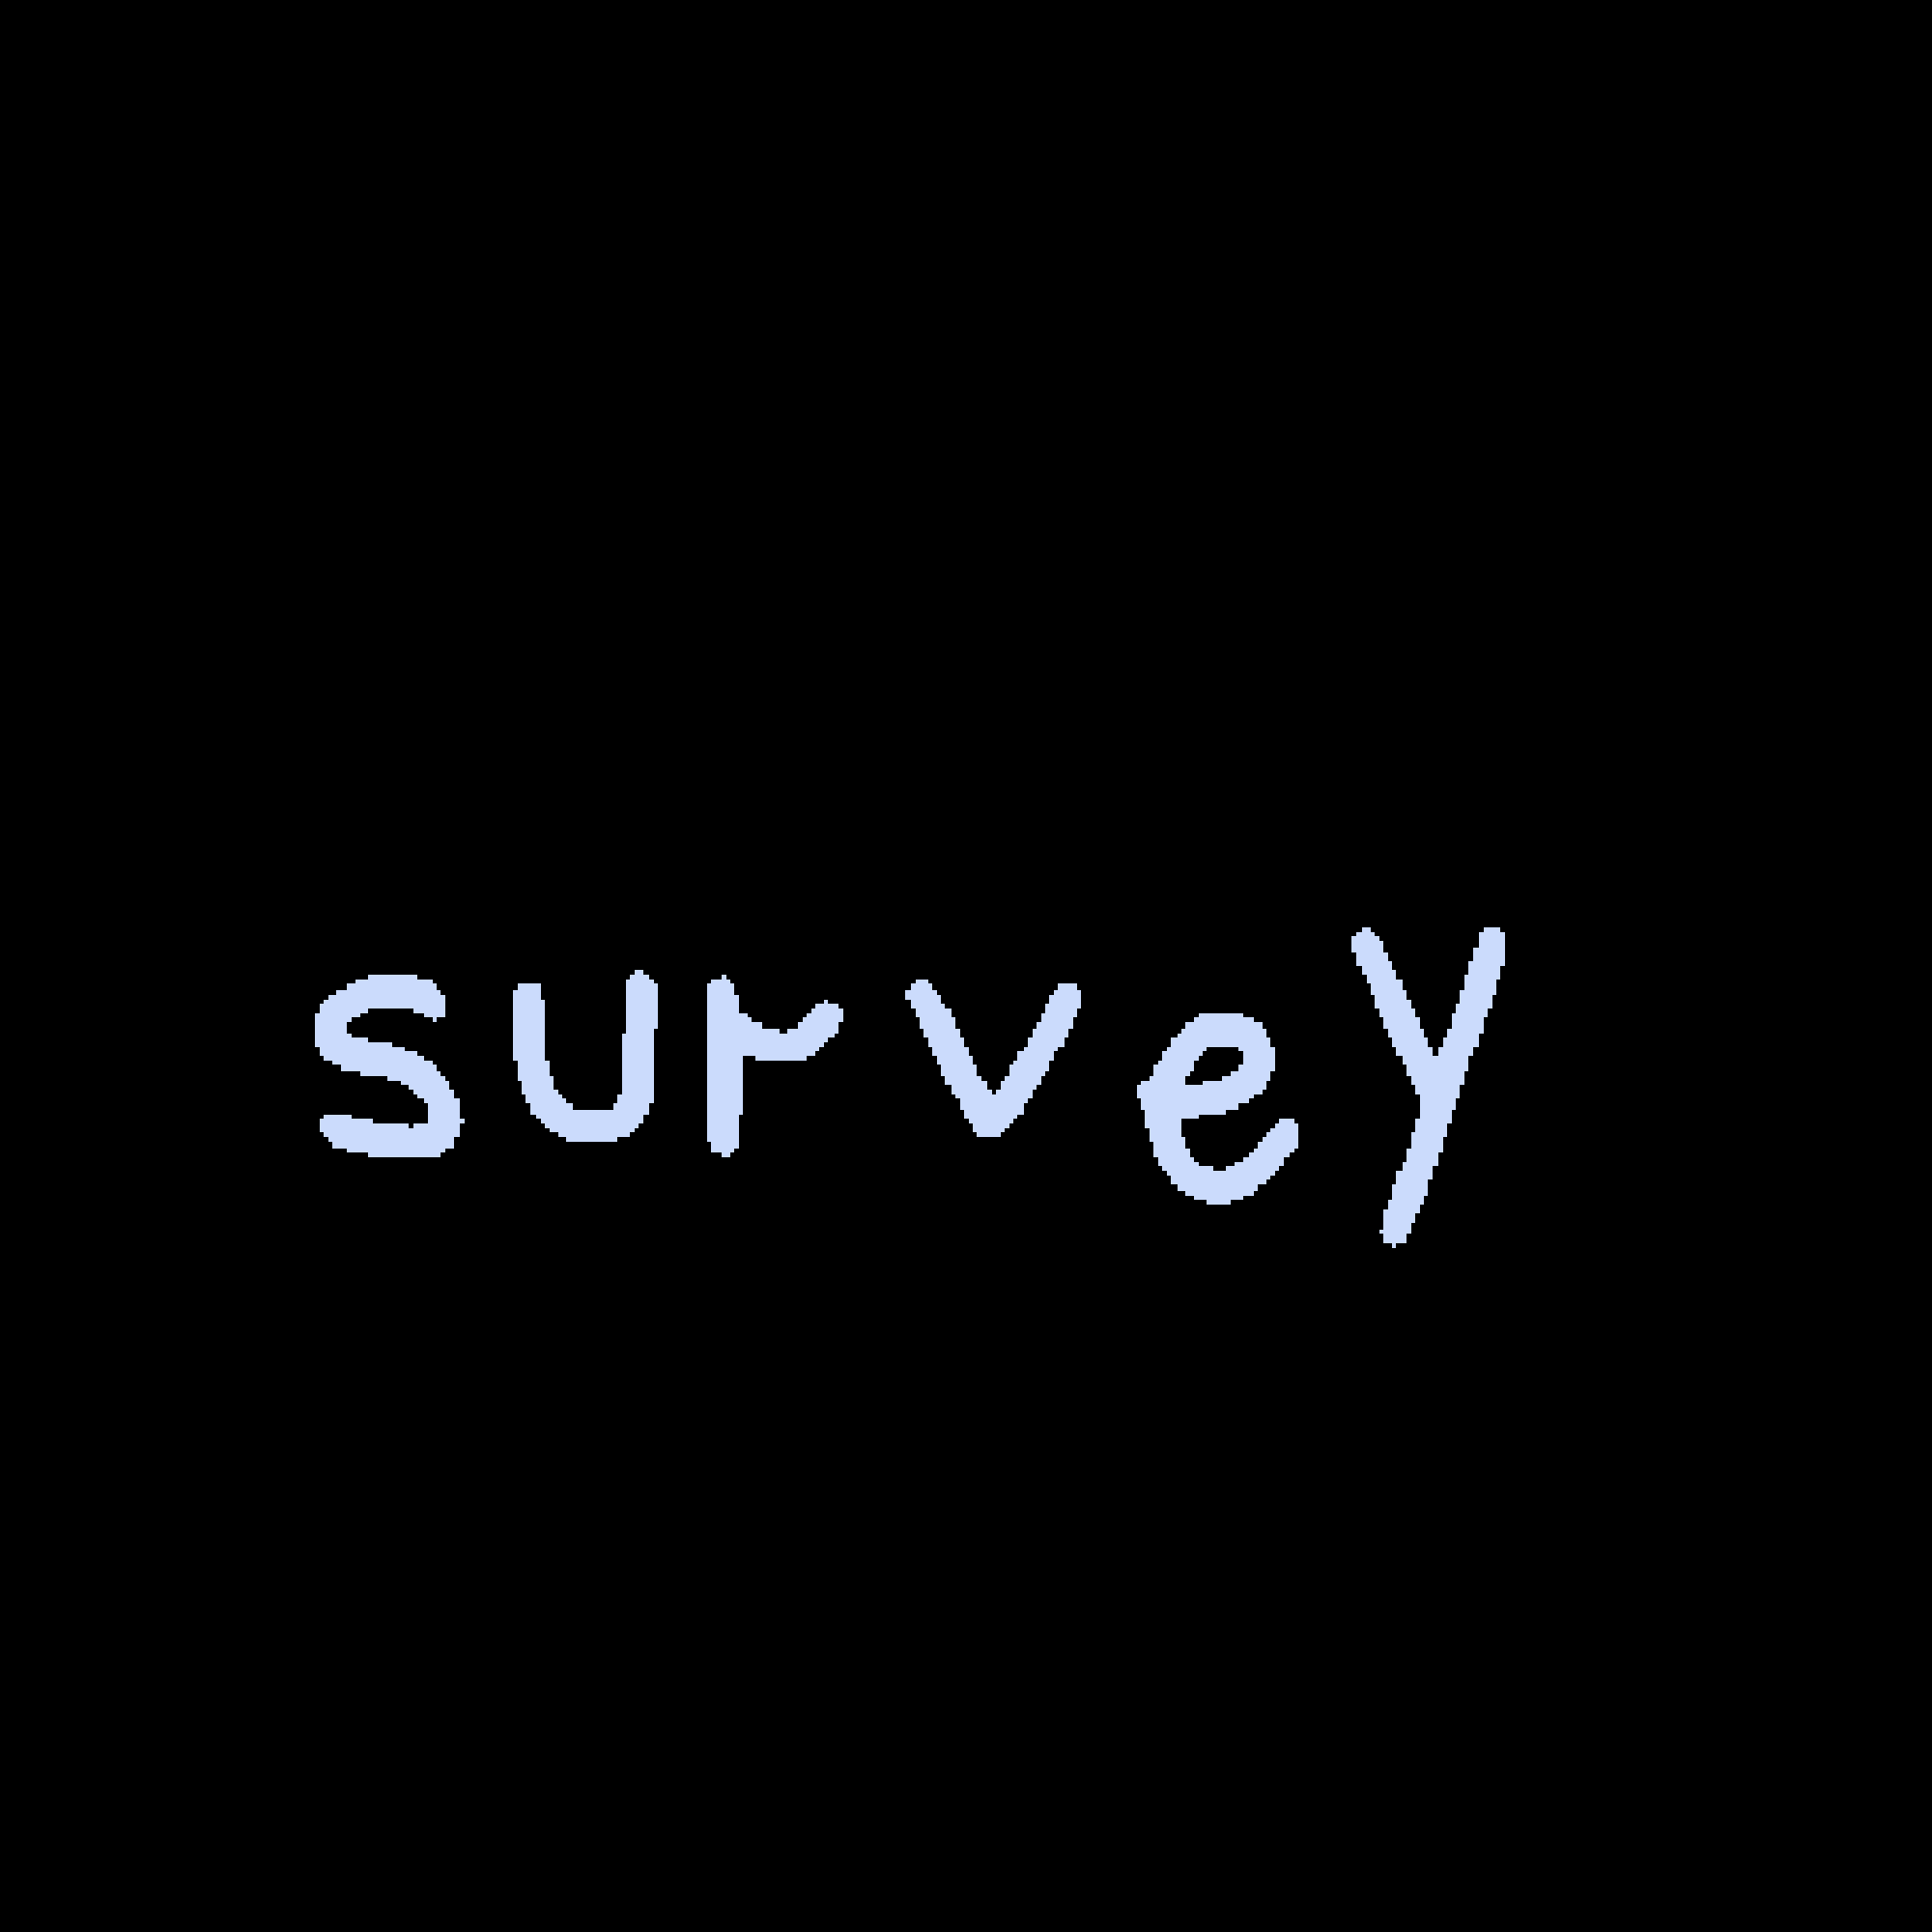 the survey